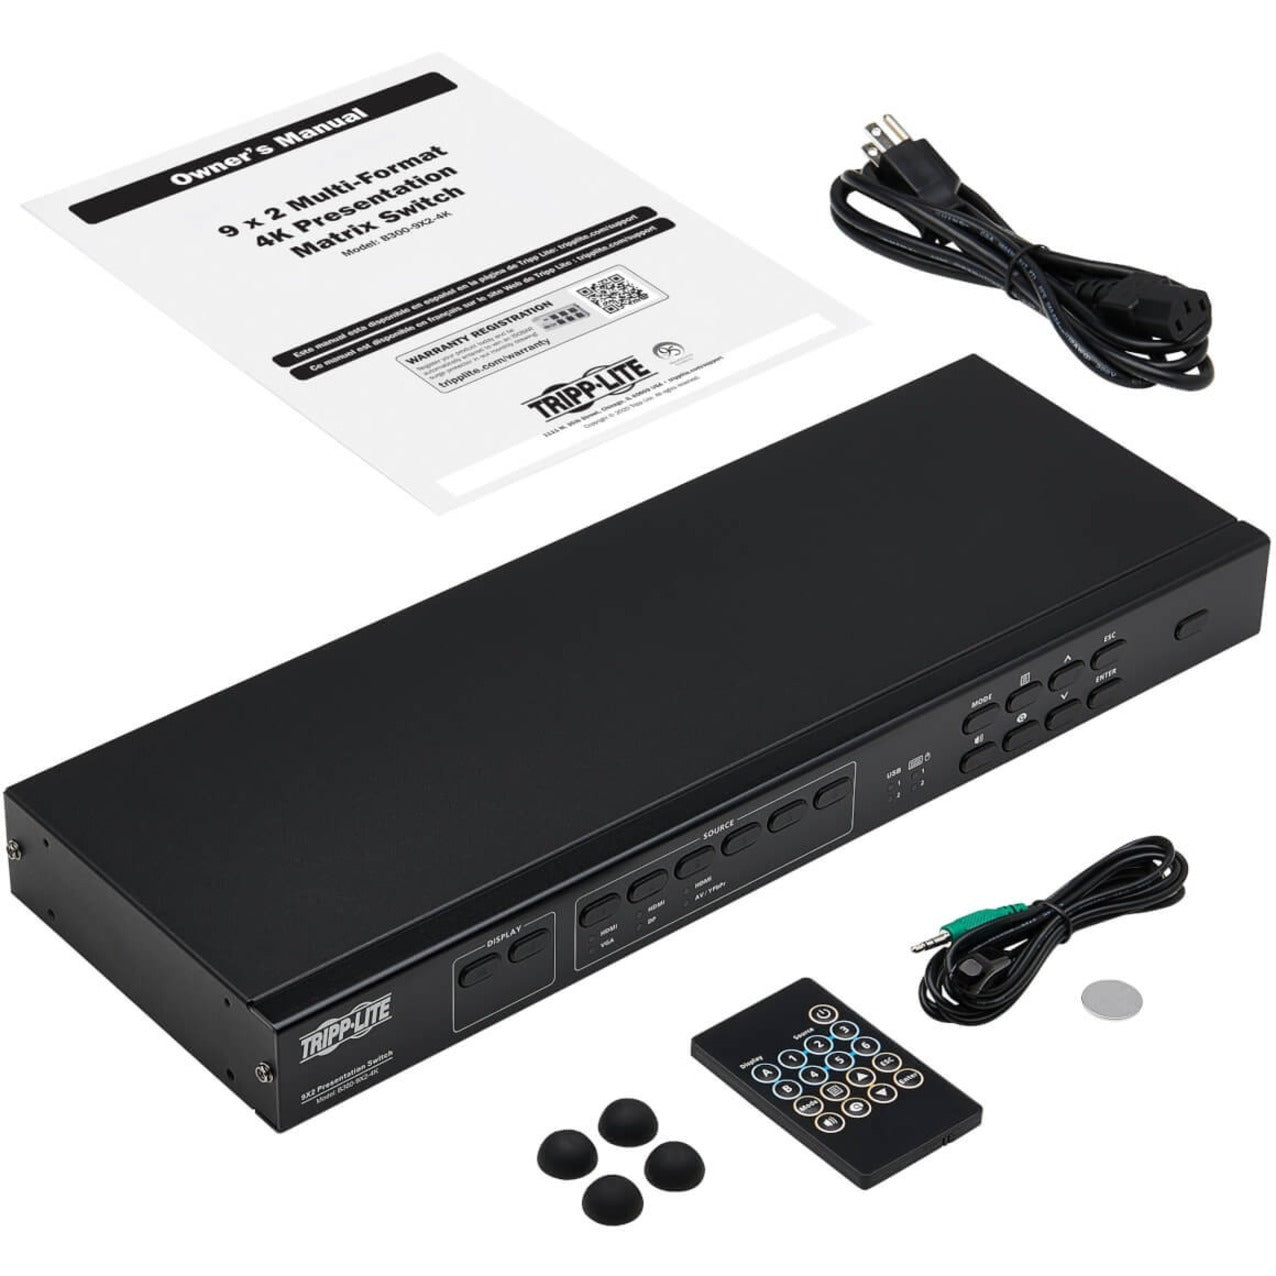 Tripp Lite B300-9X2-4K Multi-Format Matrix Switch/Splitter 4K 2 Year Warranty TAA Compliant VGA/HDMI/DisplayPort 6 USB Ports